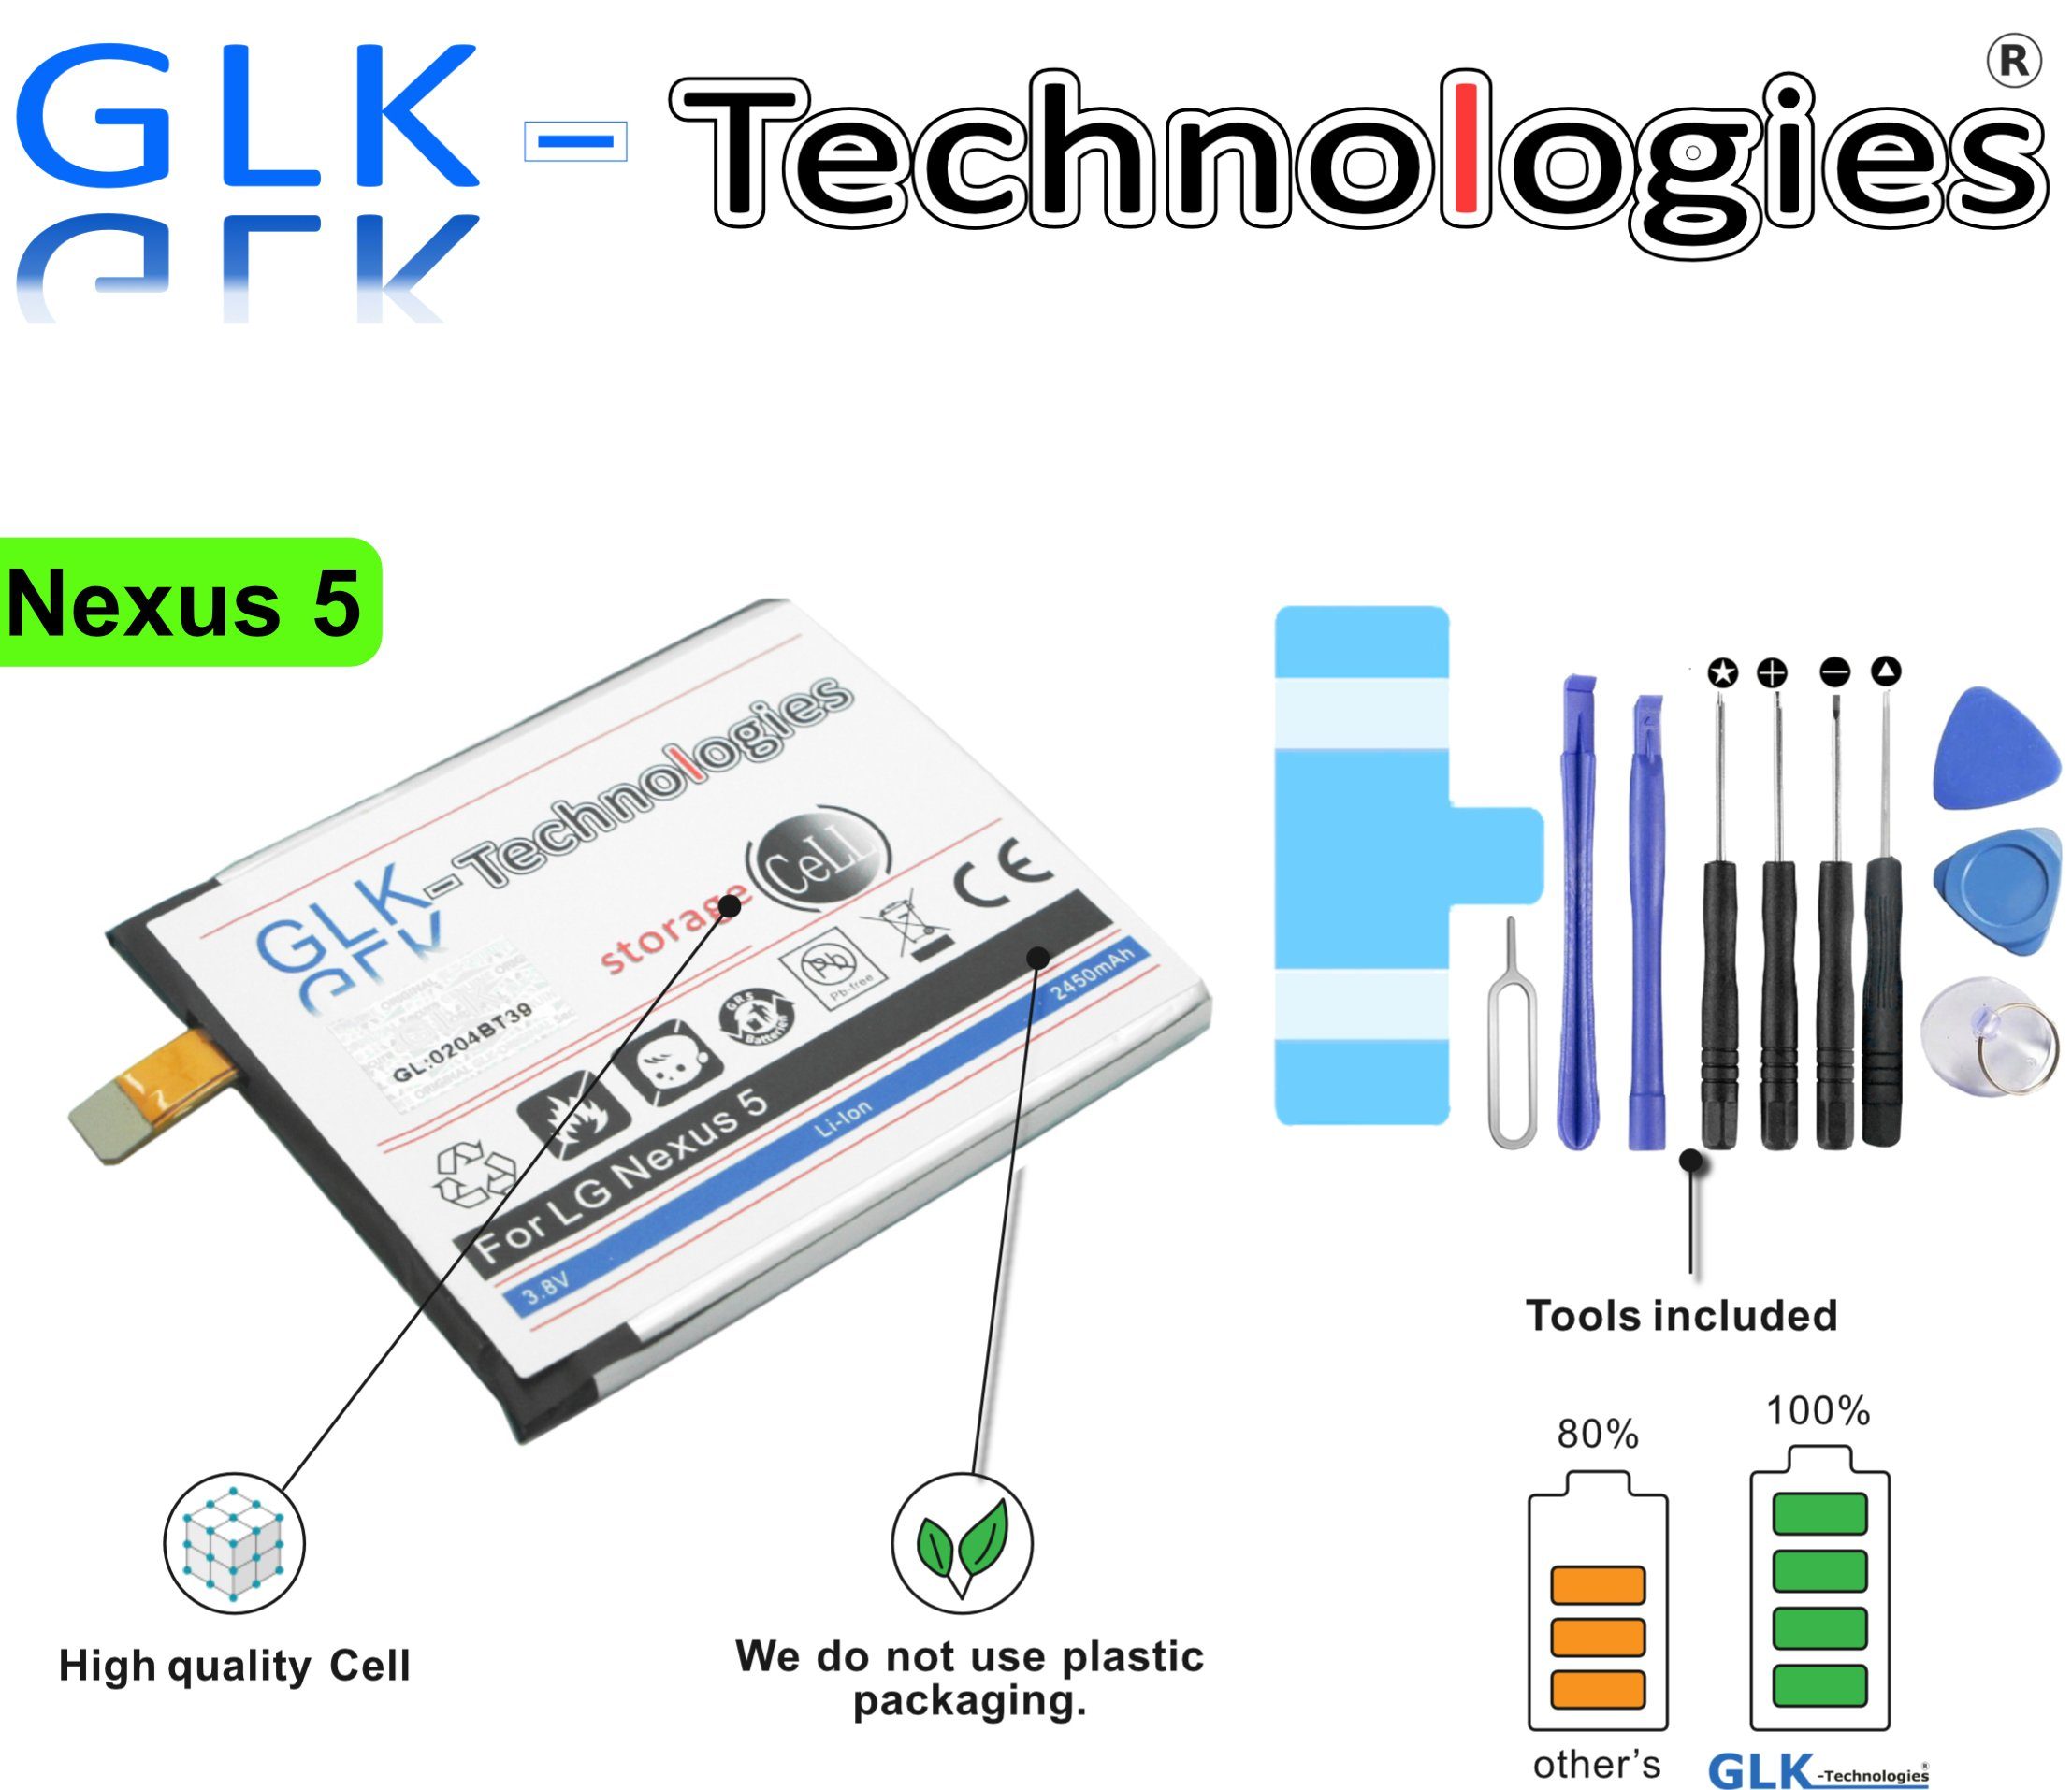 GLK-Technologies GLK-TECHNOLOGIES MEGA Akku für LG Google Nexus 5 D821 D820 BL-T9 battery NEU Smartphone-Akku 2450 mAh (3.8 V)